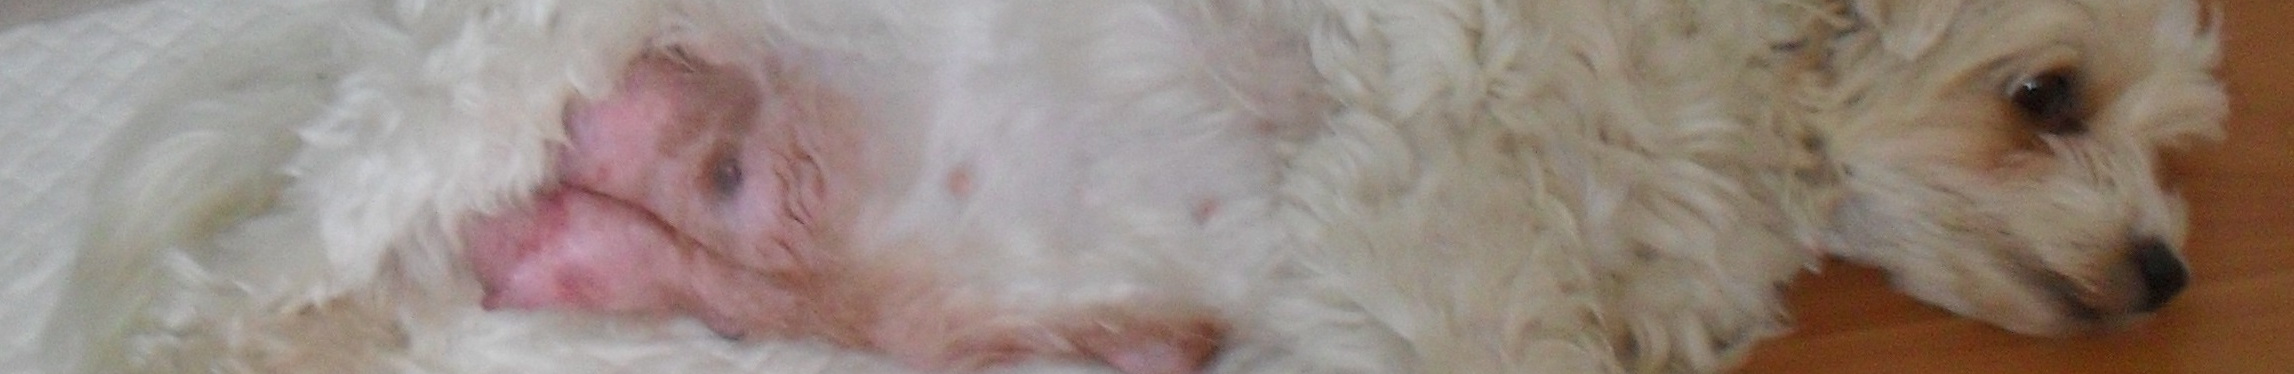 mastitis melkklierontsteking bij een hond